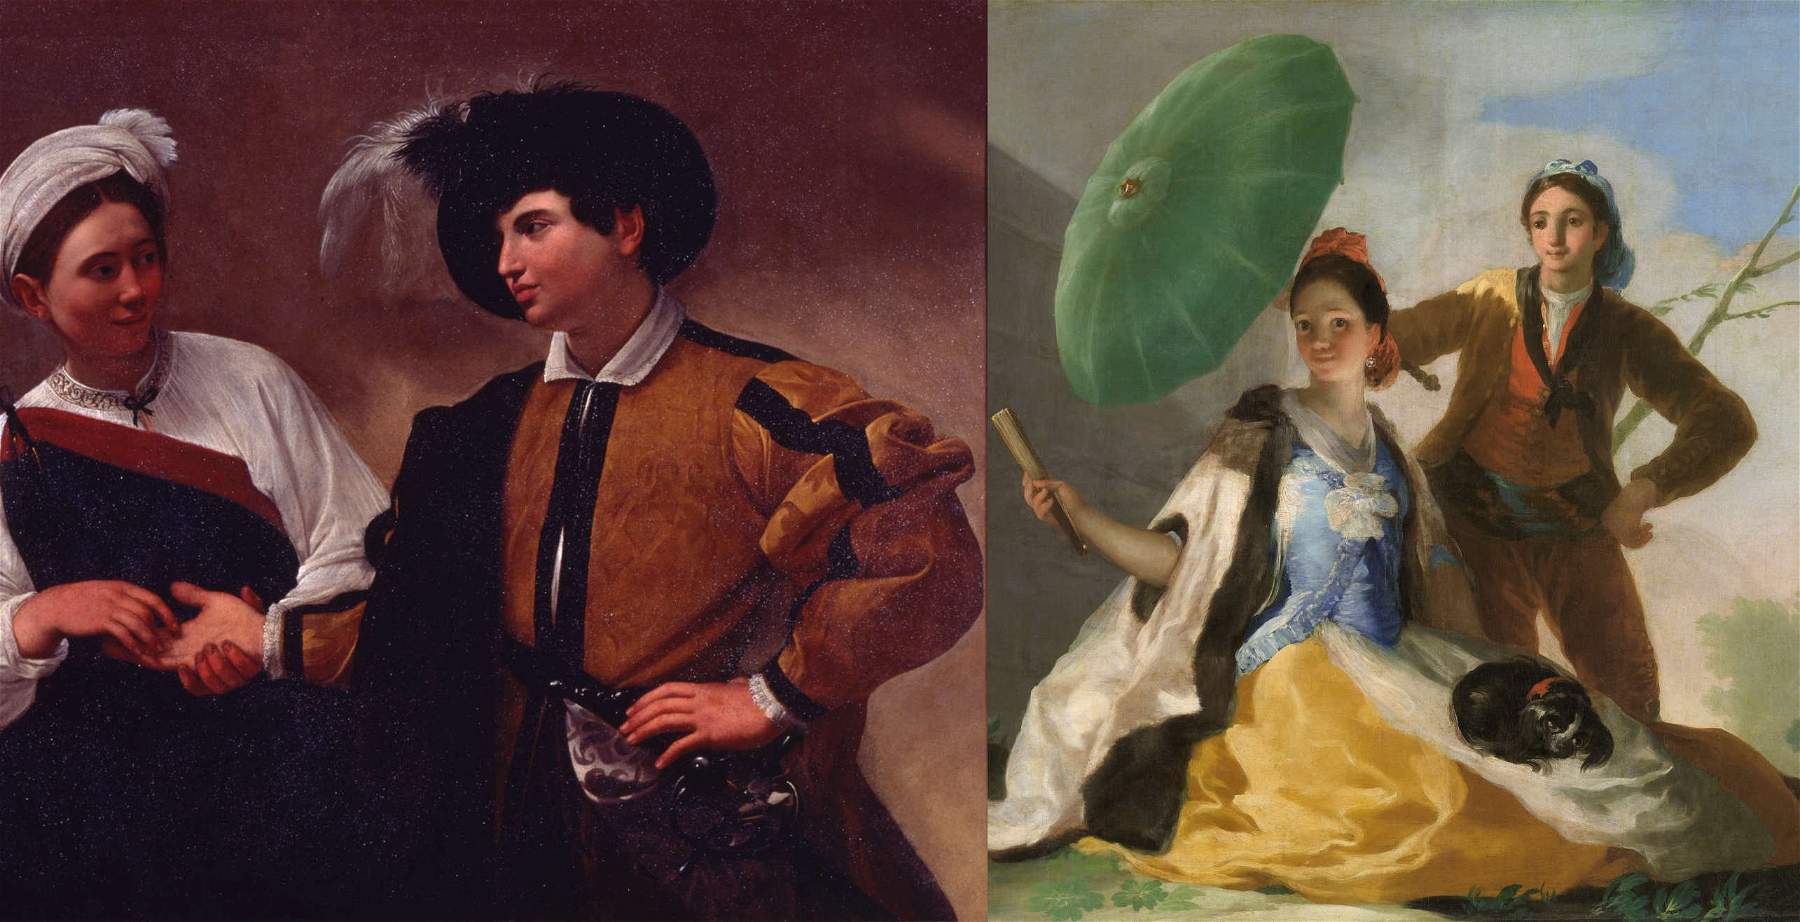 Rome, Caravaggio et Goya comparés dans une exposition aux musées du Capitole